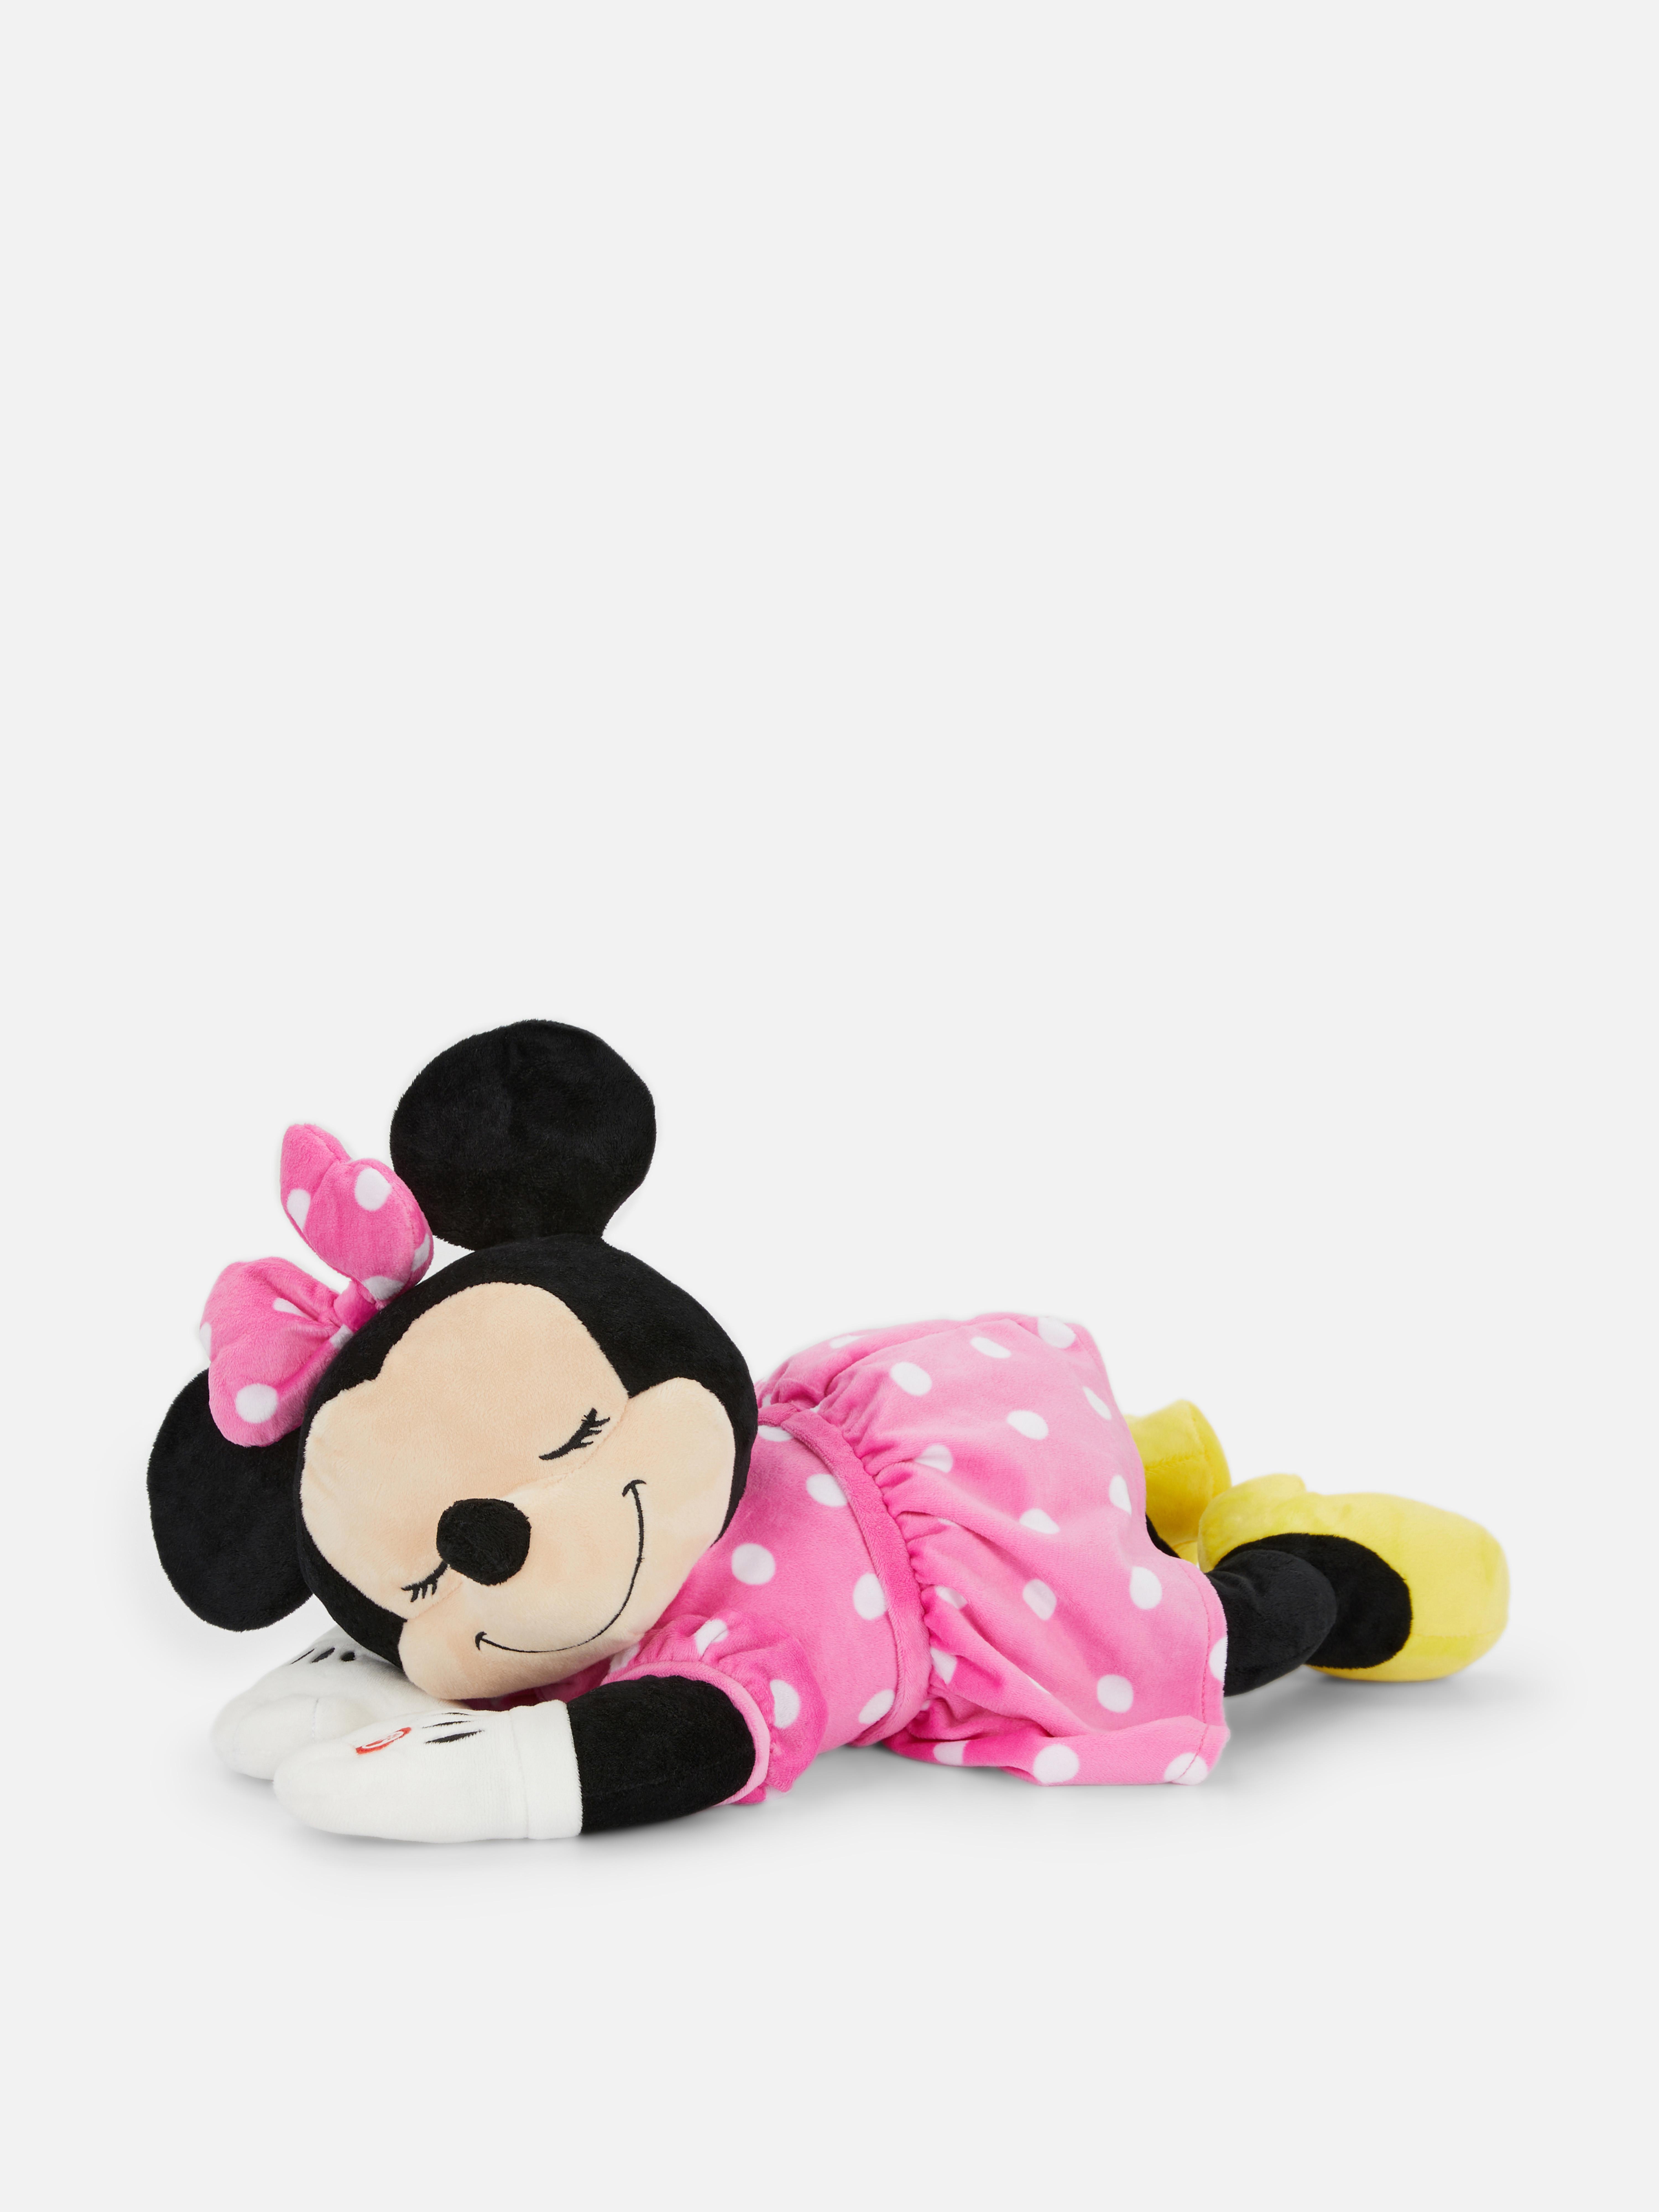 Disney’s Minnie Mouse Sleepy Plush Toy